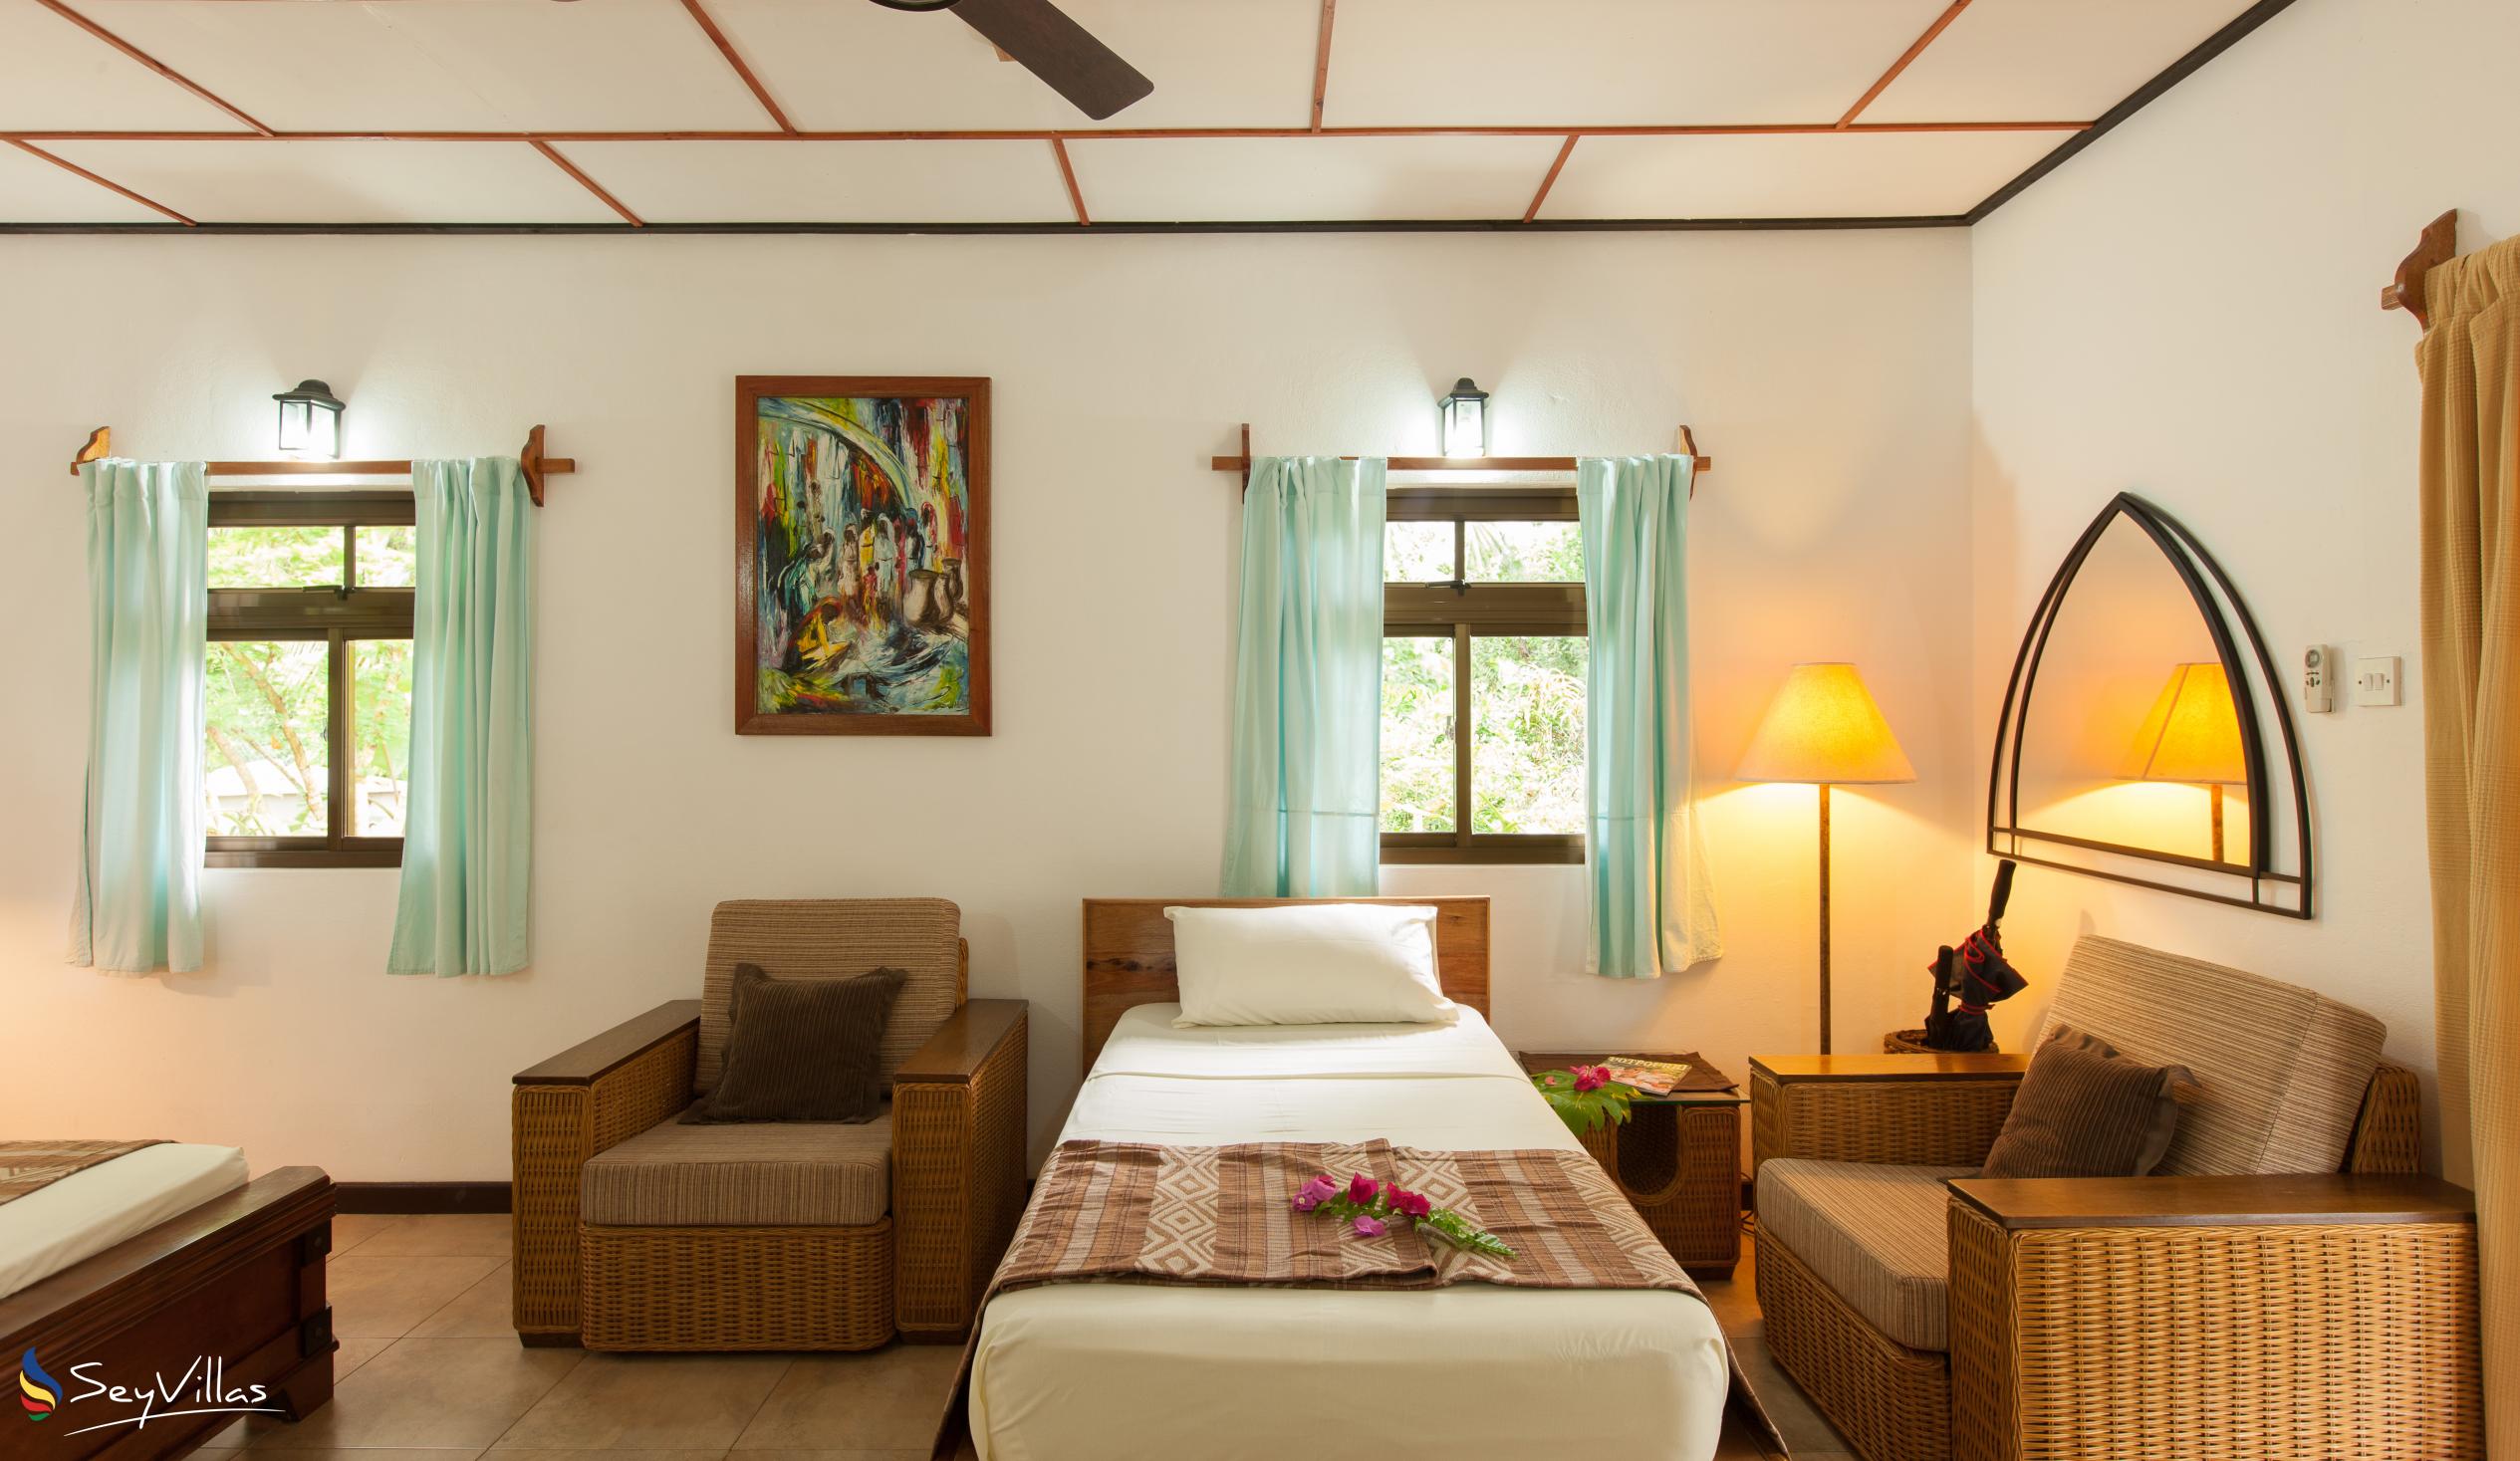 Foto 102: Domaine Les Rochers - Bungalow Palmier 2 chambres - La Digue (Seychelles)